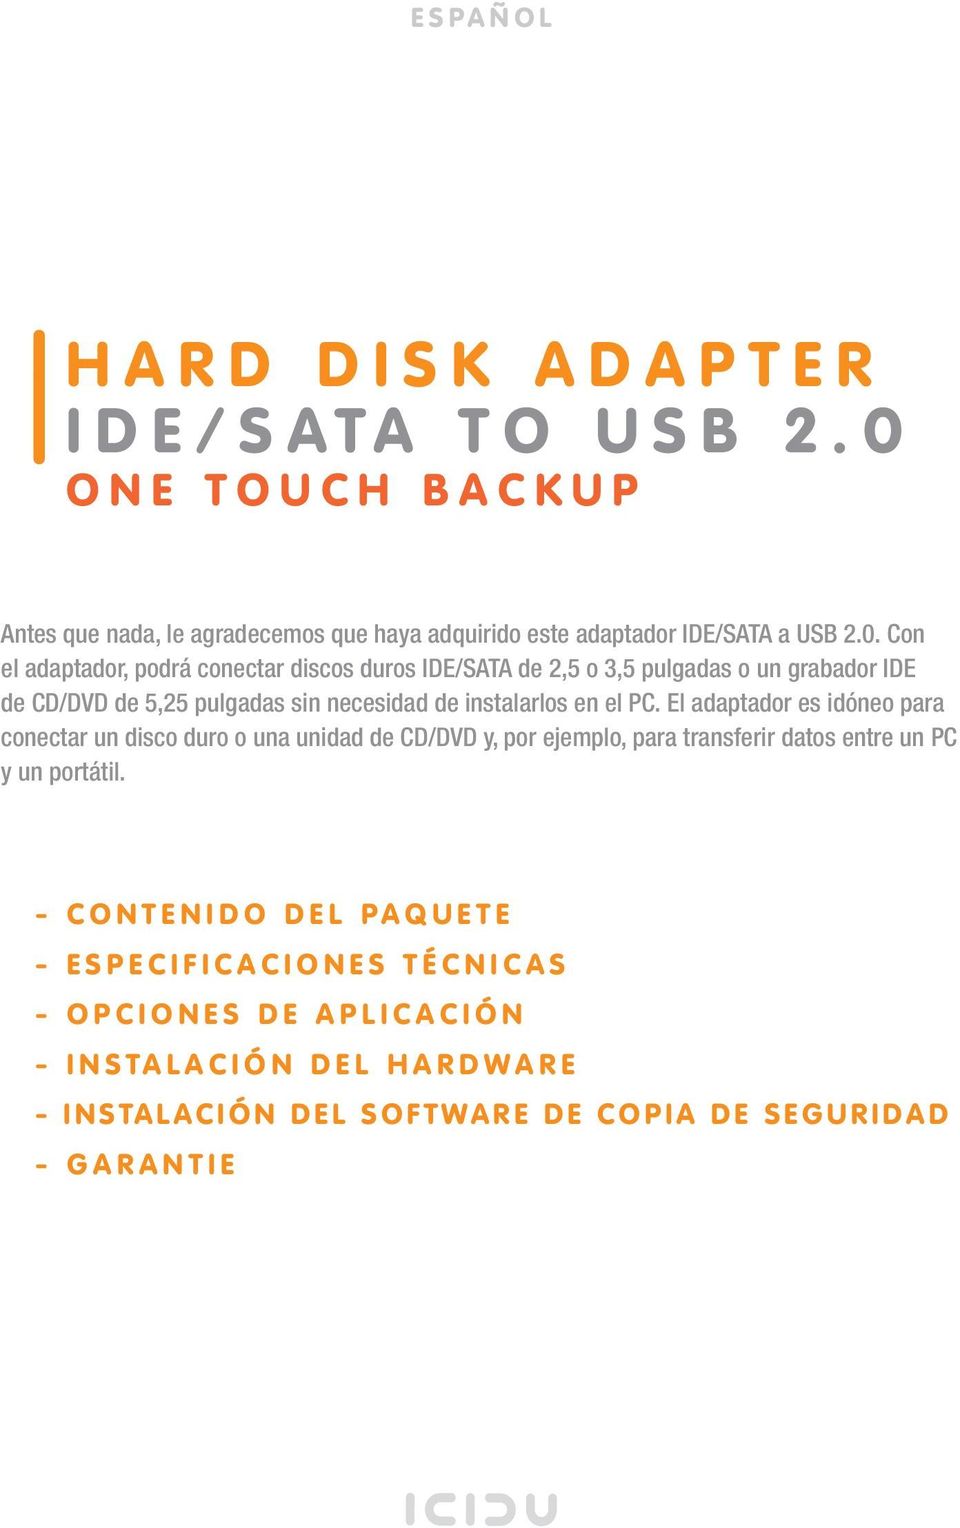 Con el adaptador, podrá conectar discos duros IDE/SATA de 2,5 o 3,5 pulgadas o un grabador IDE de CD/DVD de 5,25 pulgadas sin necesidad de instalarlos en el PC.